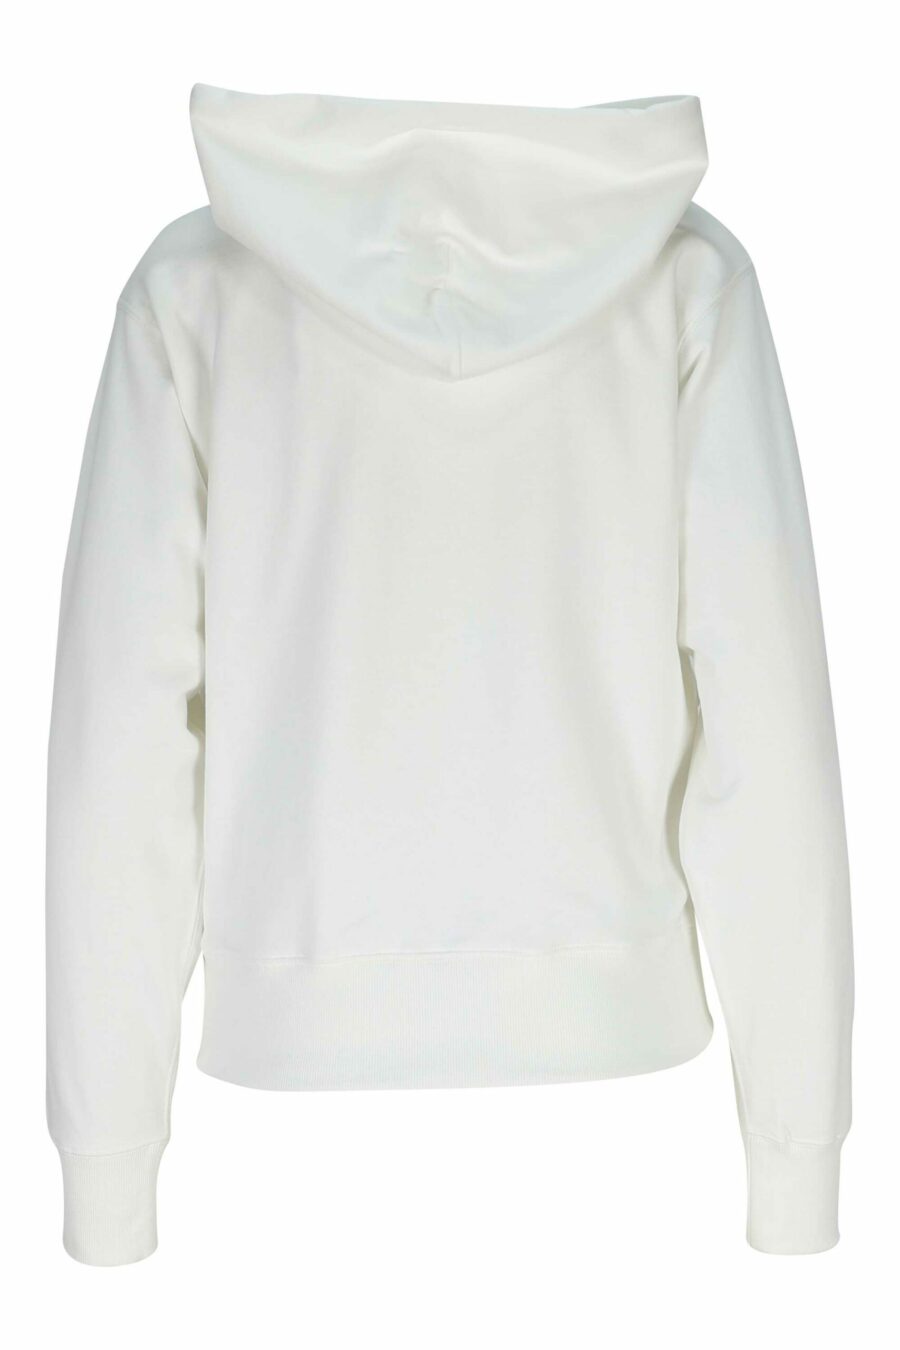 White hooded sweatshirt with mini logo "kenzo elephant" - 3612230619975 1 scaled